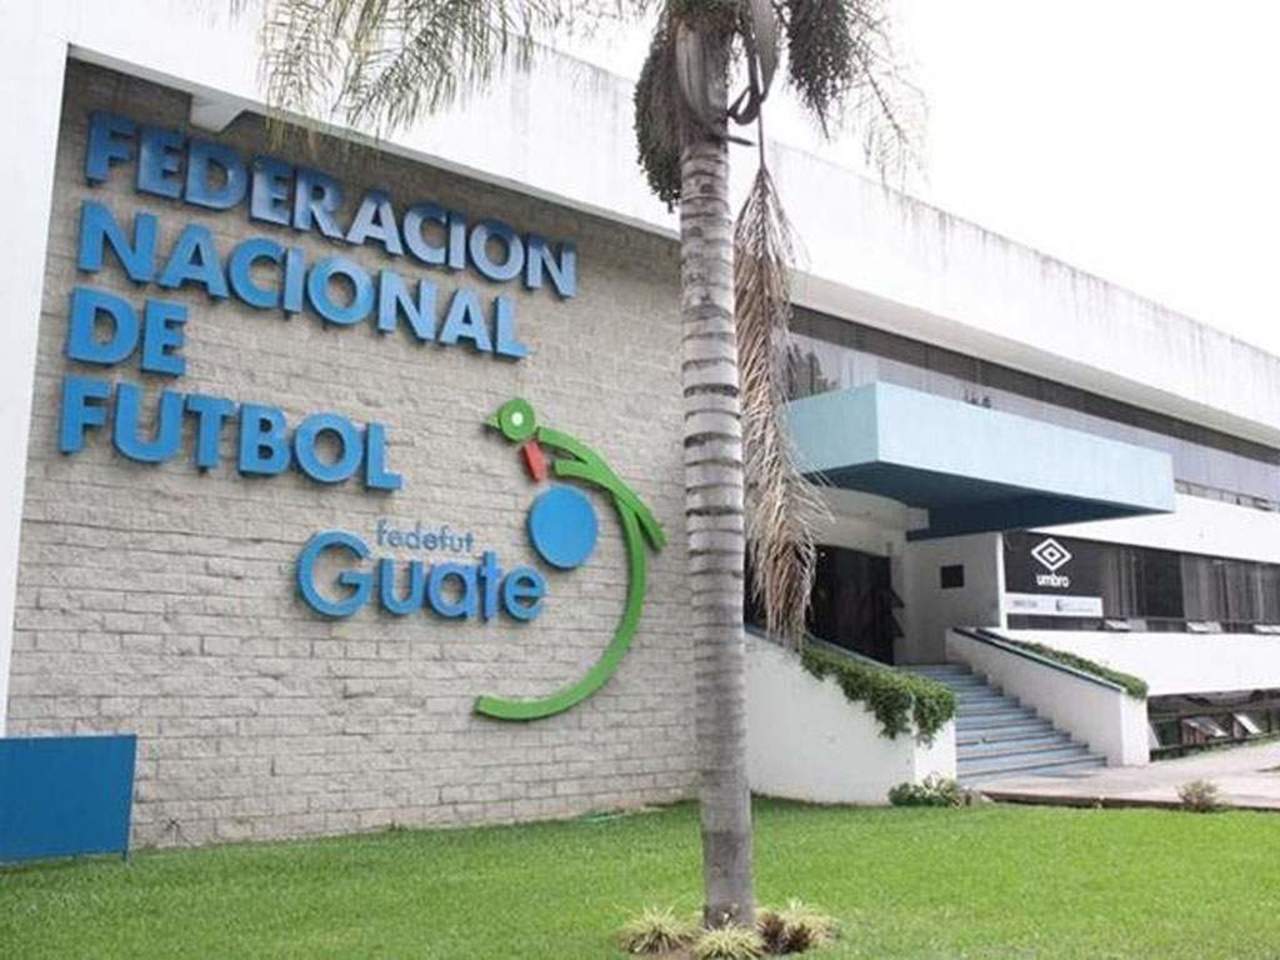 Los equipos y funcionarios guatemaltecos estaban suspendidos desde octubre de 2016 hasta que su reglamento se ajustara a los estatutos de la FIFA. (Cortesía)